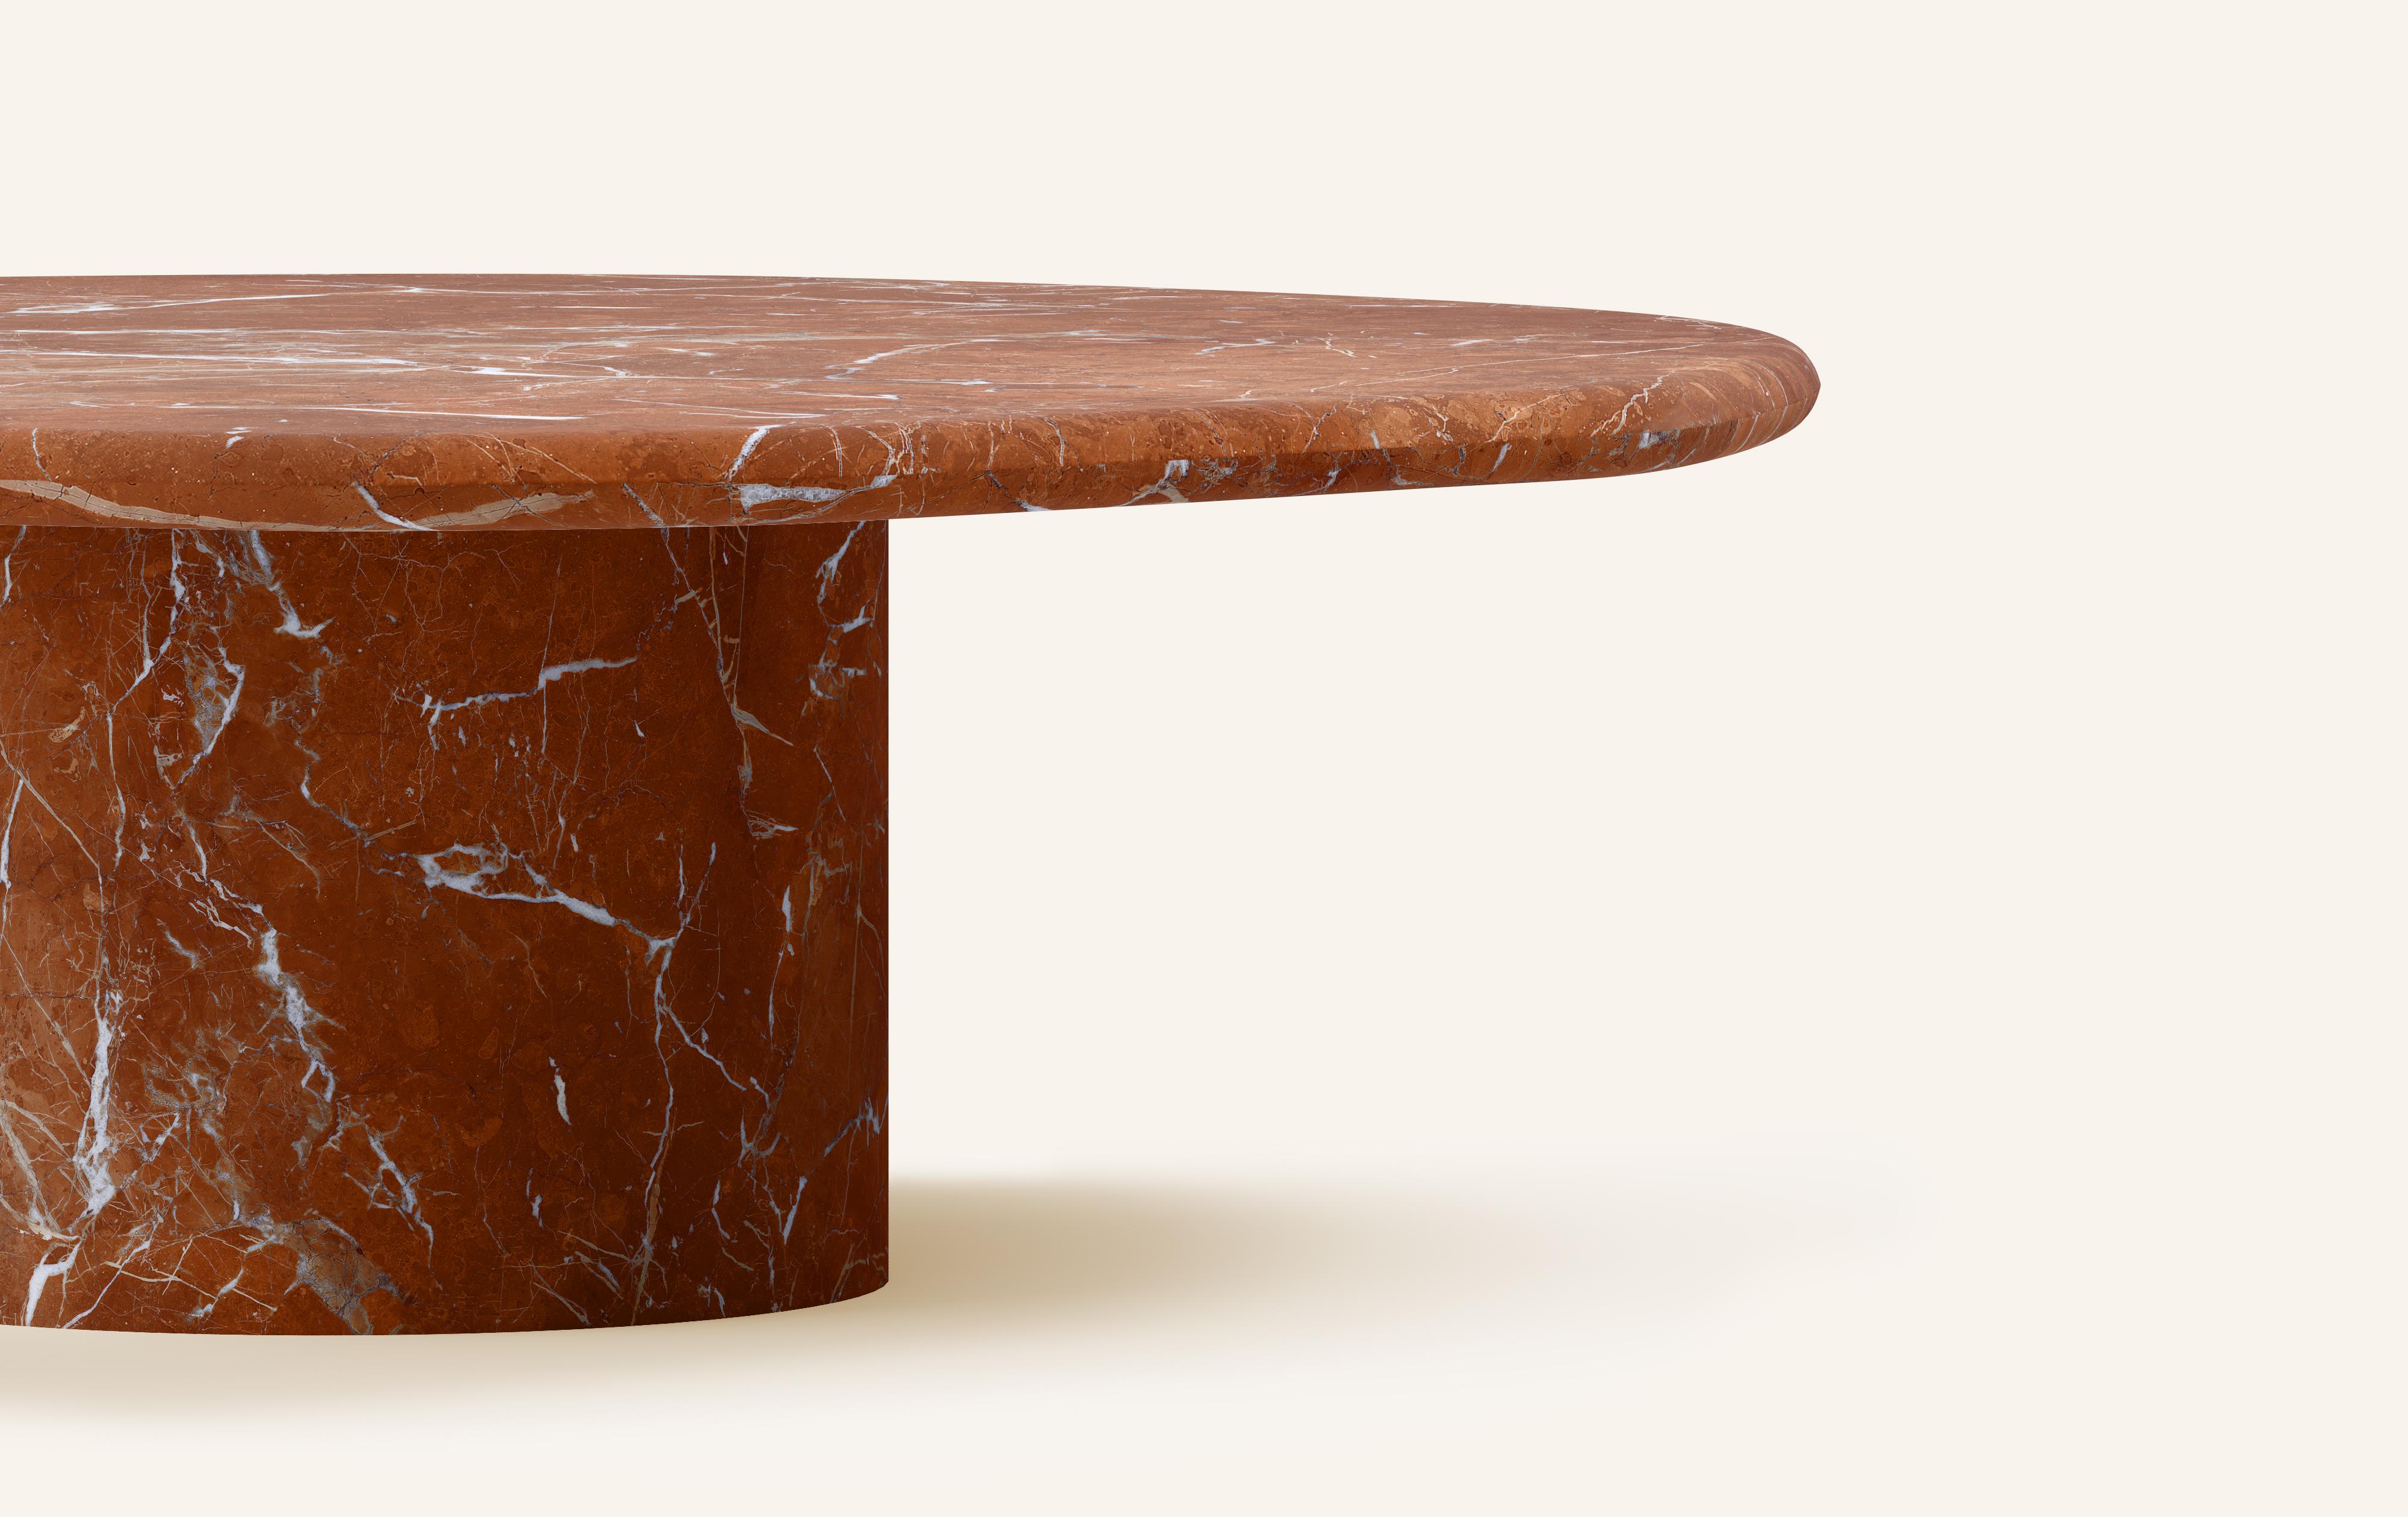 Organic Modern FORM(LA) Lago Round Coffee Table 36”L x 36”W x 14”H Rojo Alicante Marble For Sale